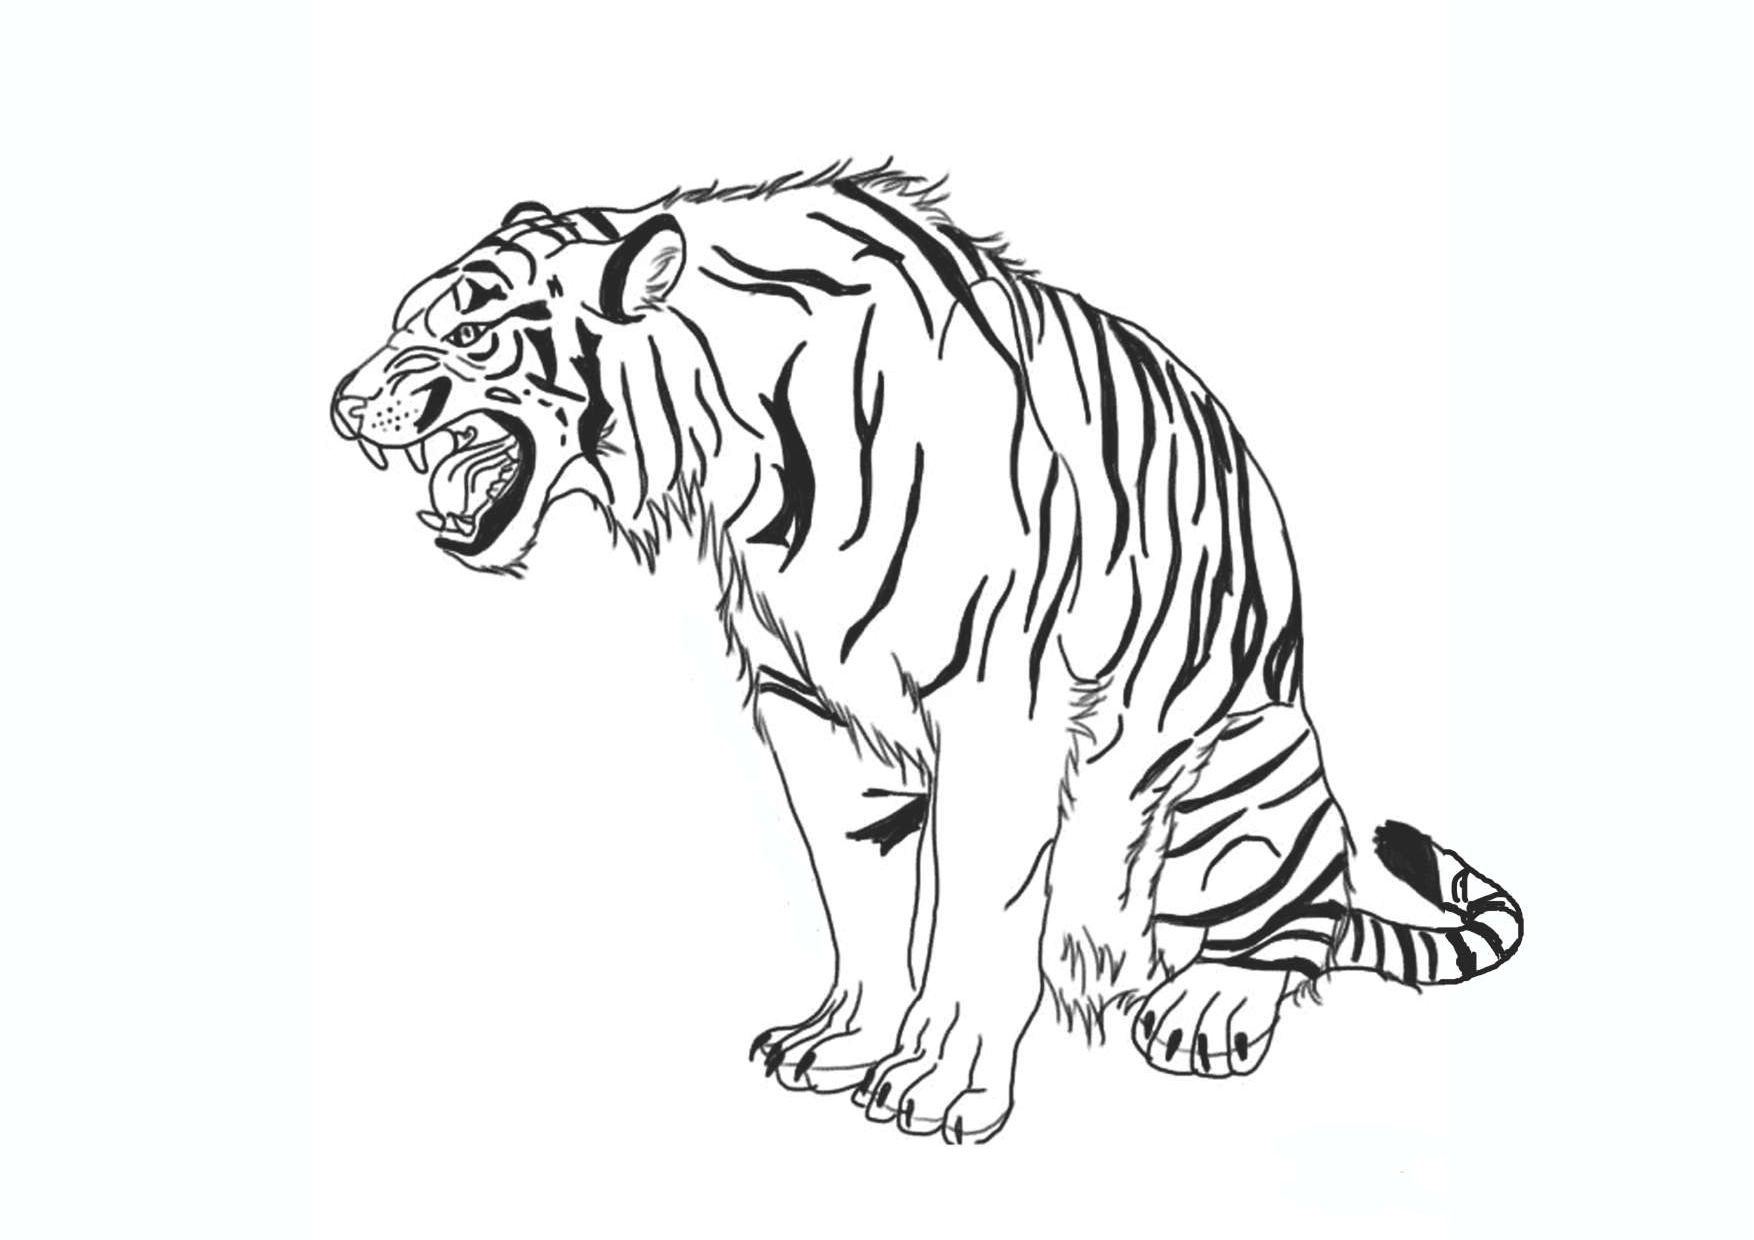 Tranh tô màu con hổ đang ngồi